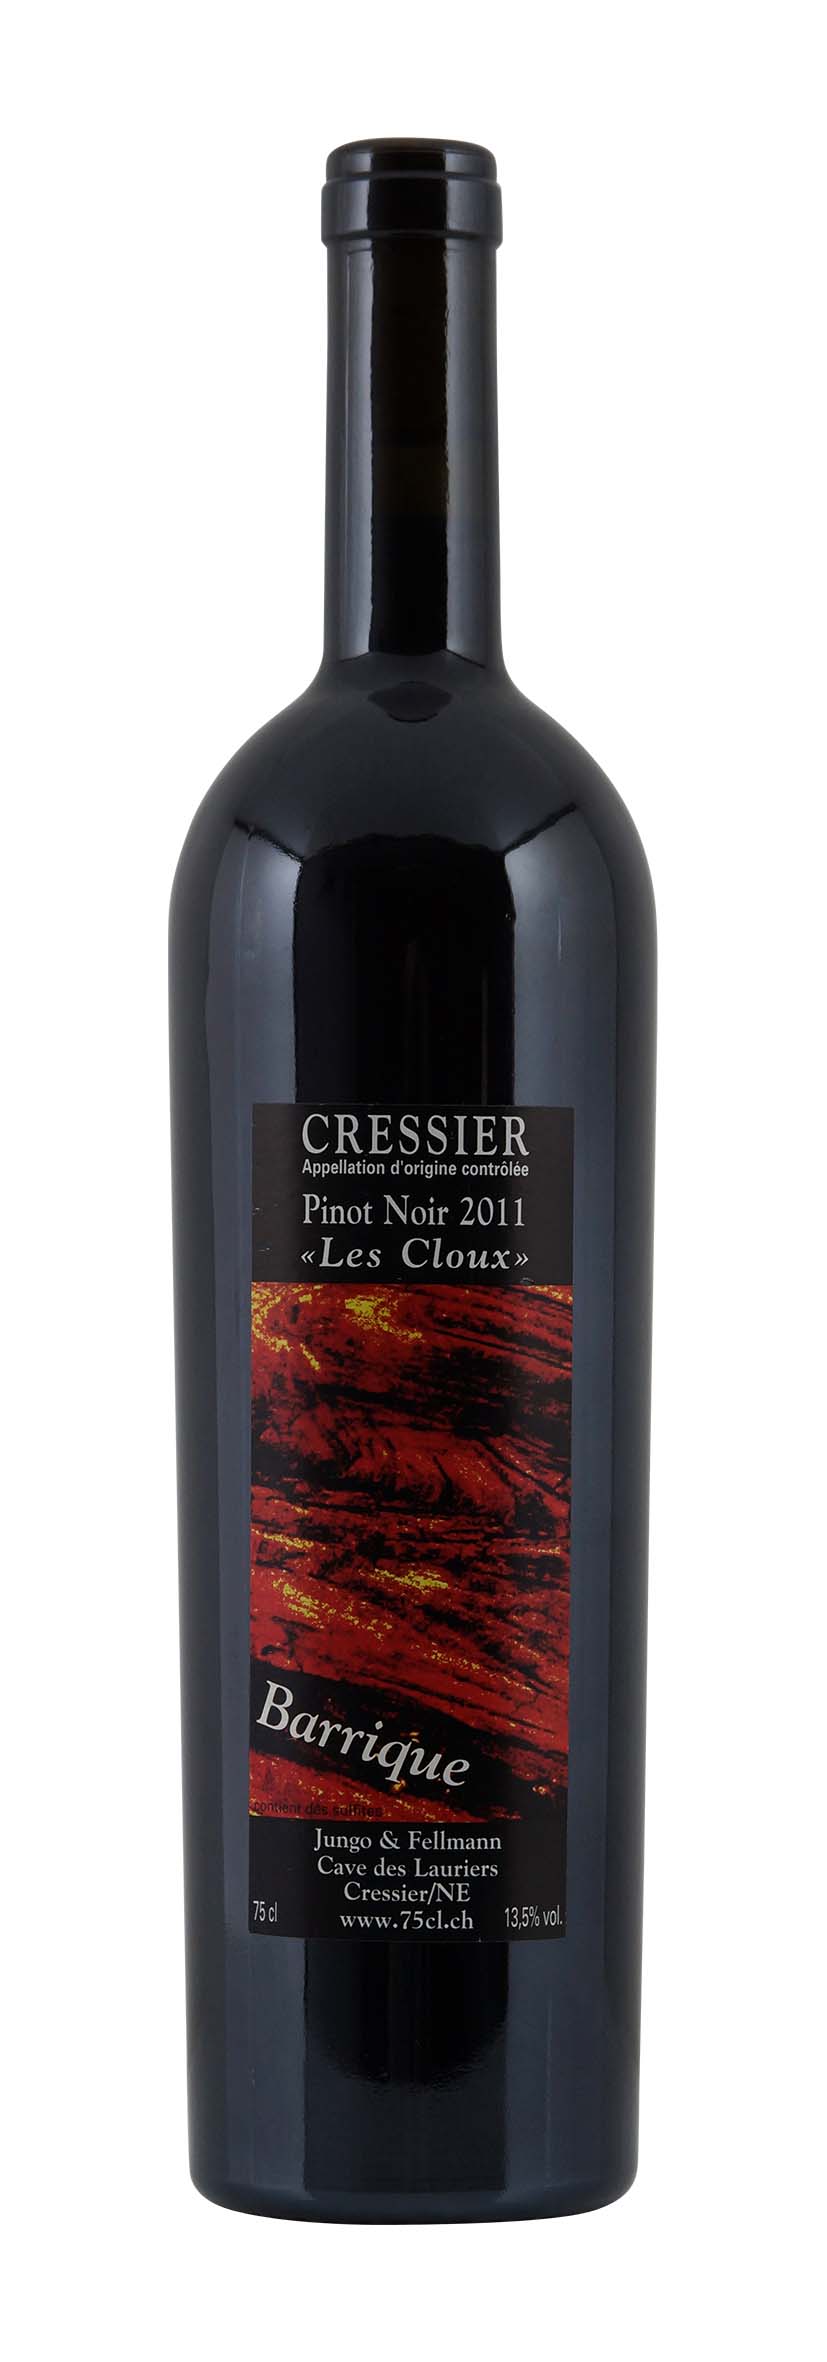 Cressier AOC Pinot Noir 2011